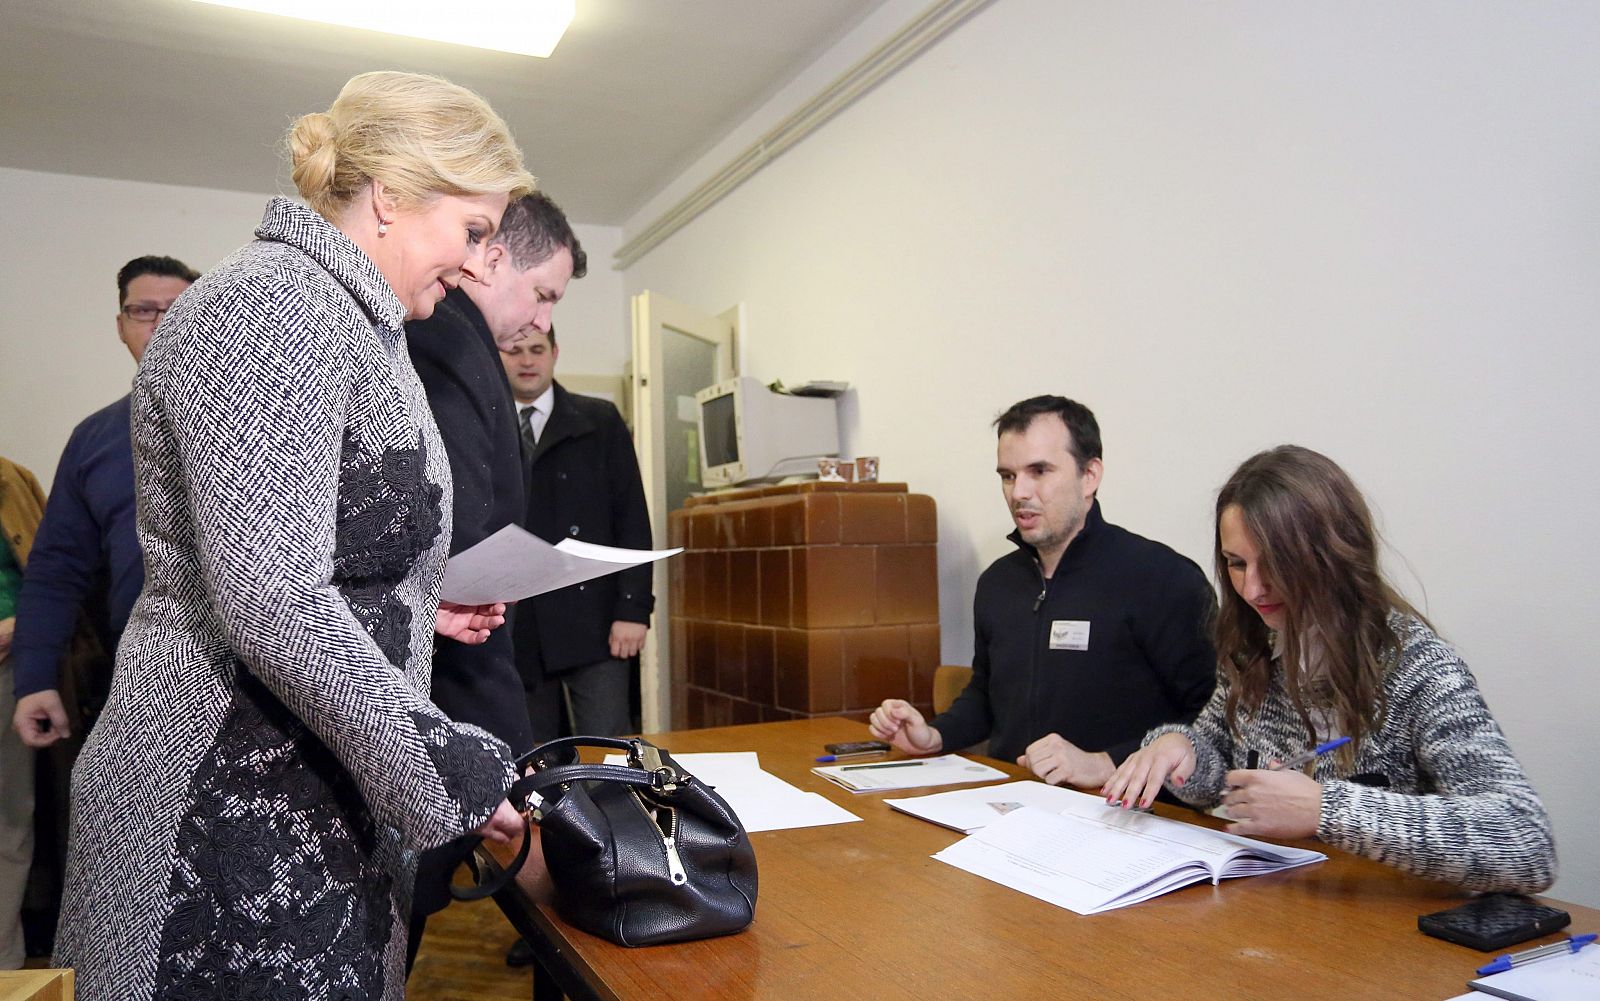 La candidata presidencial de la Unión Democrática Croata (HDZ) Kolinda Grabar-Kitarovic (L) mientras emite su voto en un colegio electoral en Zagreb.